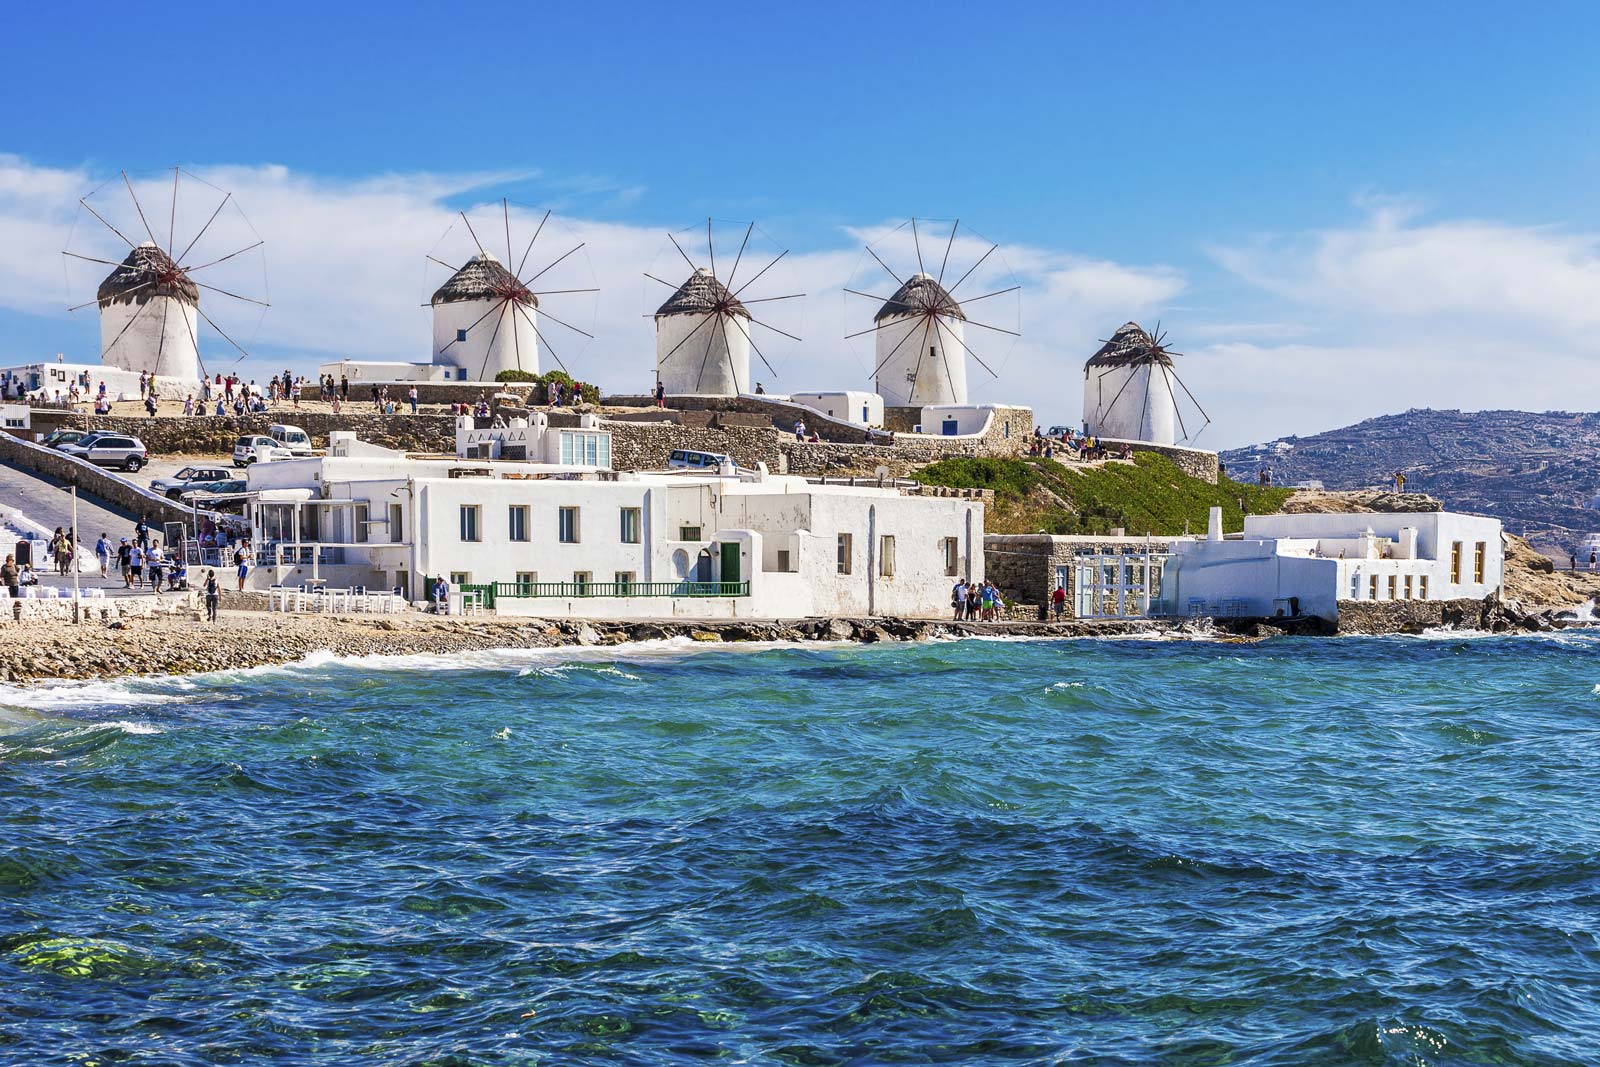 Destinos populares de alquiler de barcos en Grecia